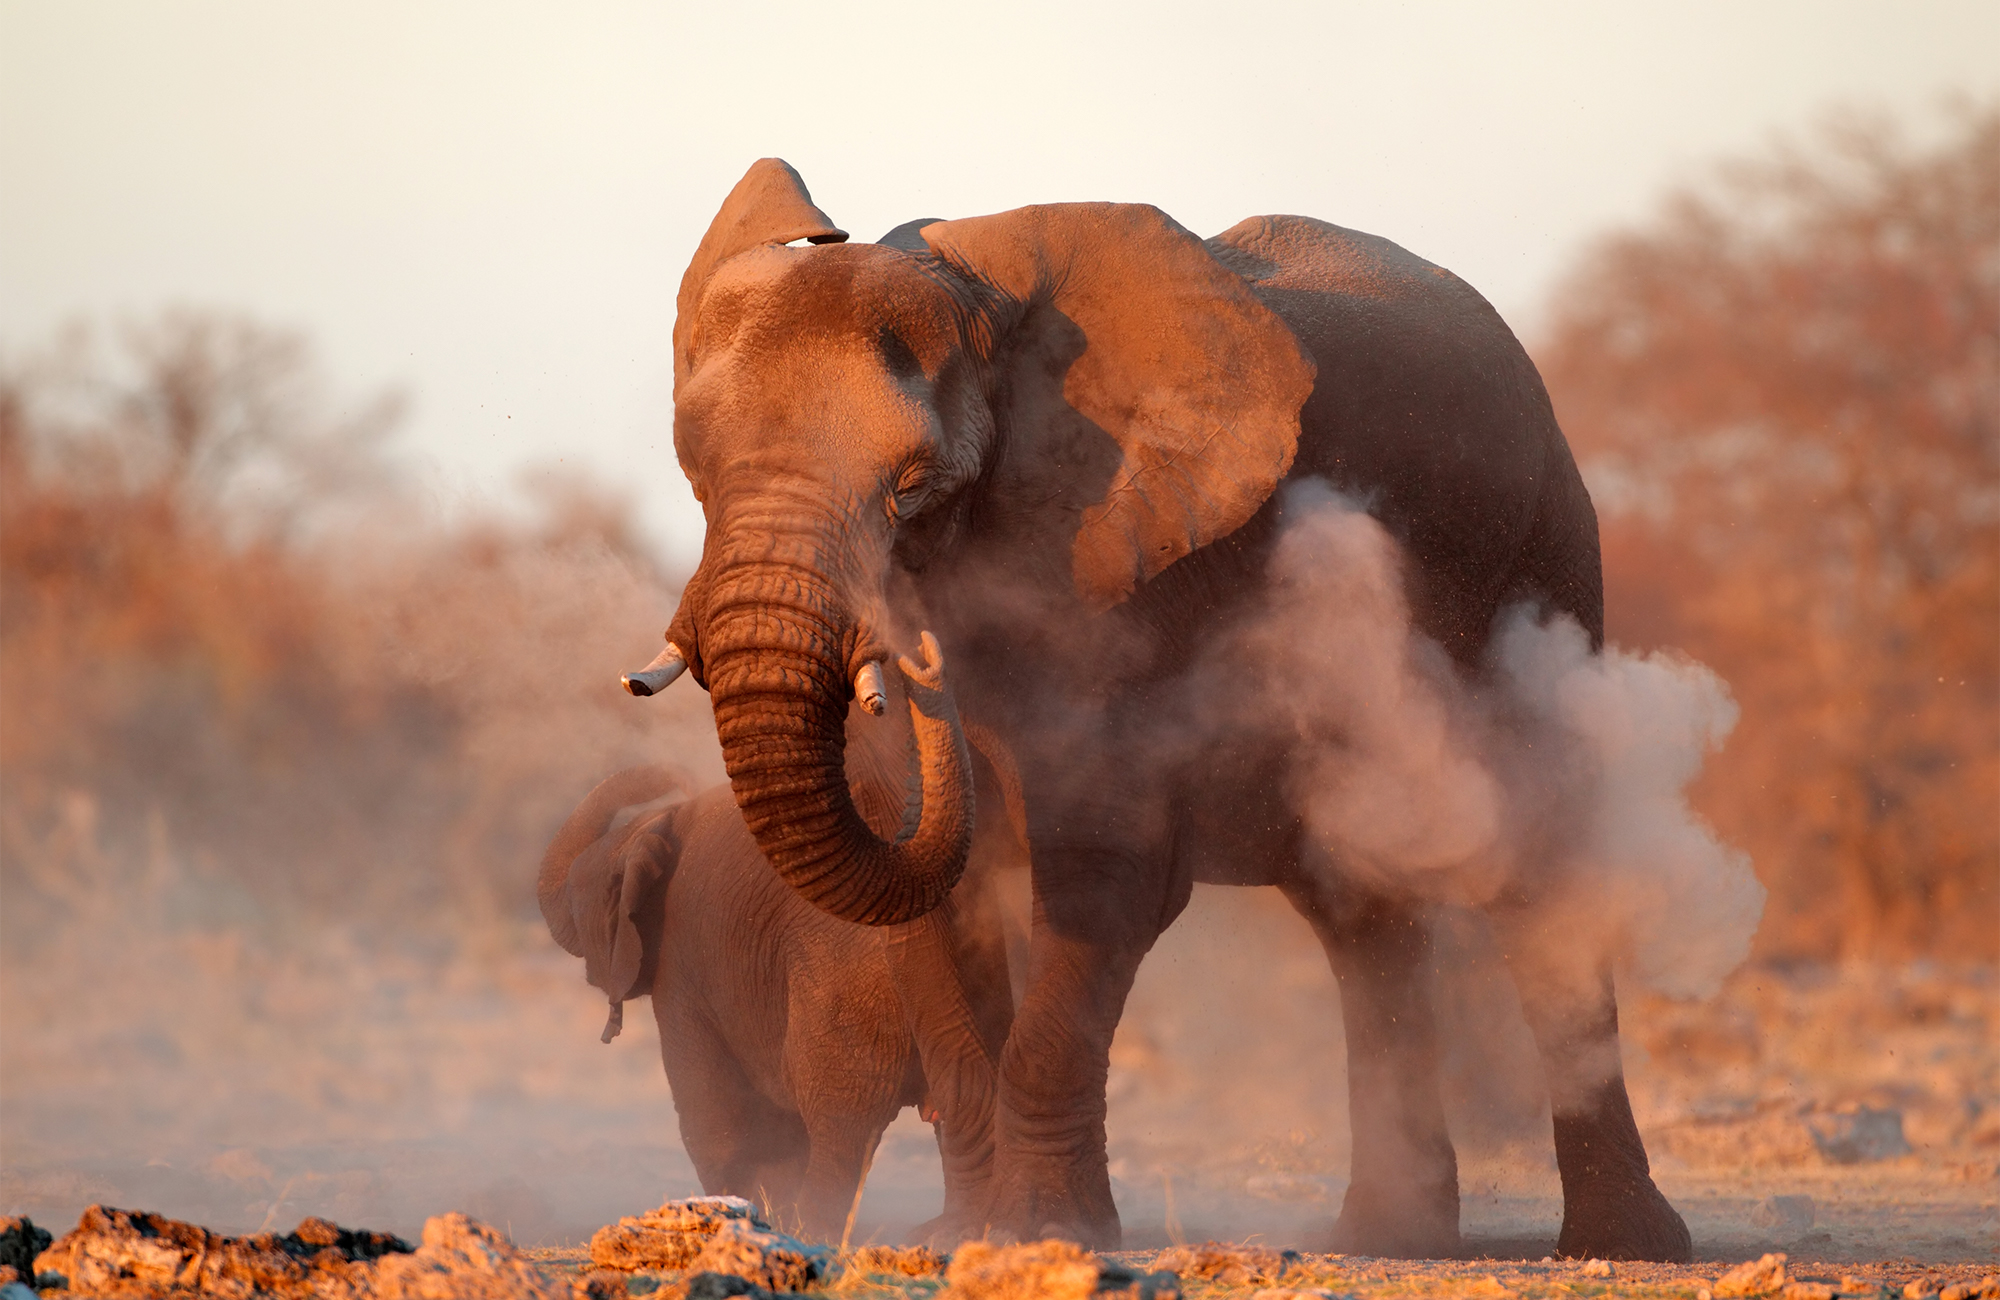 Safari i Etosha National Park i Namibia, Afrika - KILROY